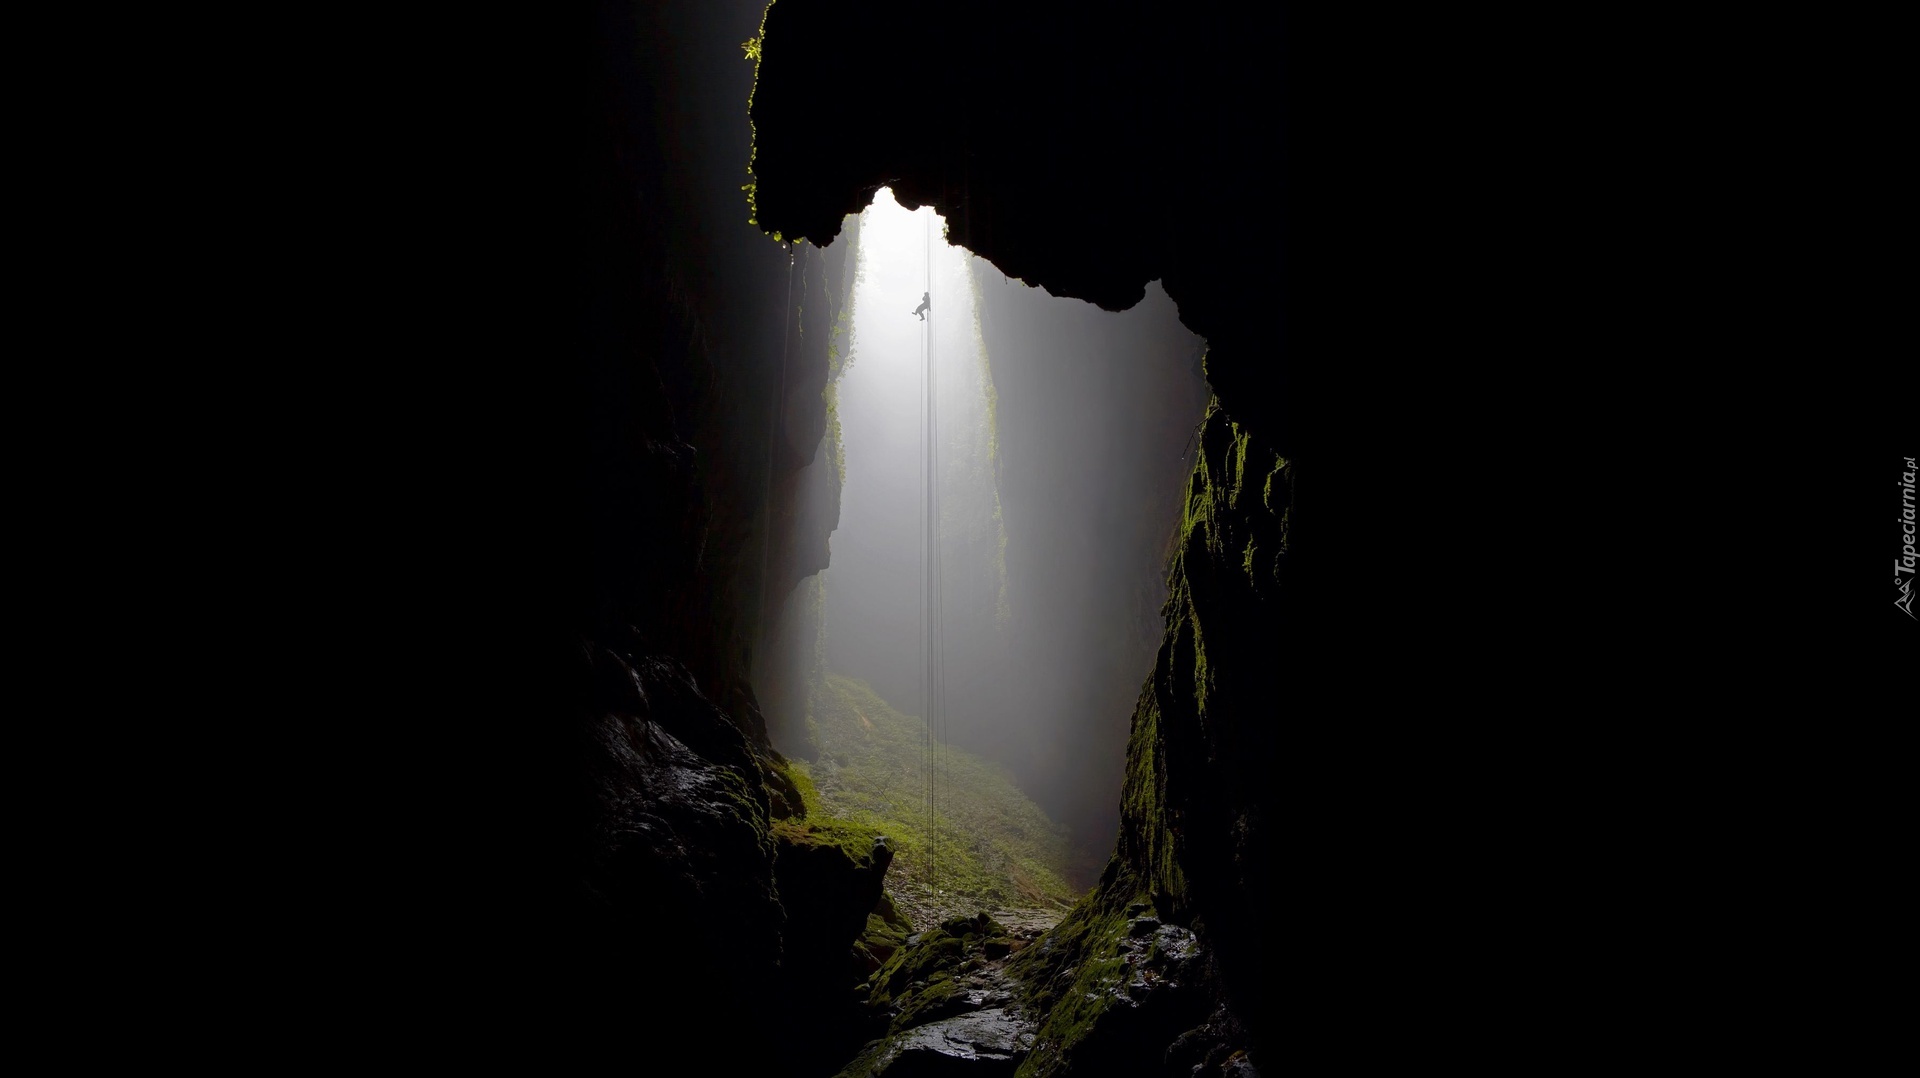 Meksyk, Cave of Swallows, Jaskinia Jaskółek, Speleolog, Liny, Półmrok, Przebijające światło